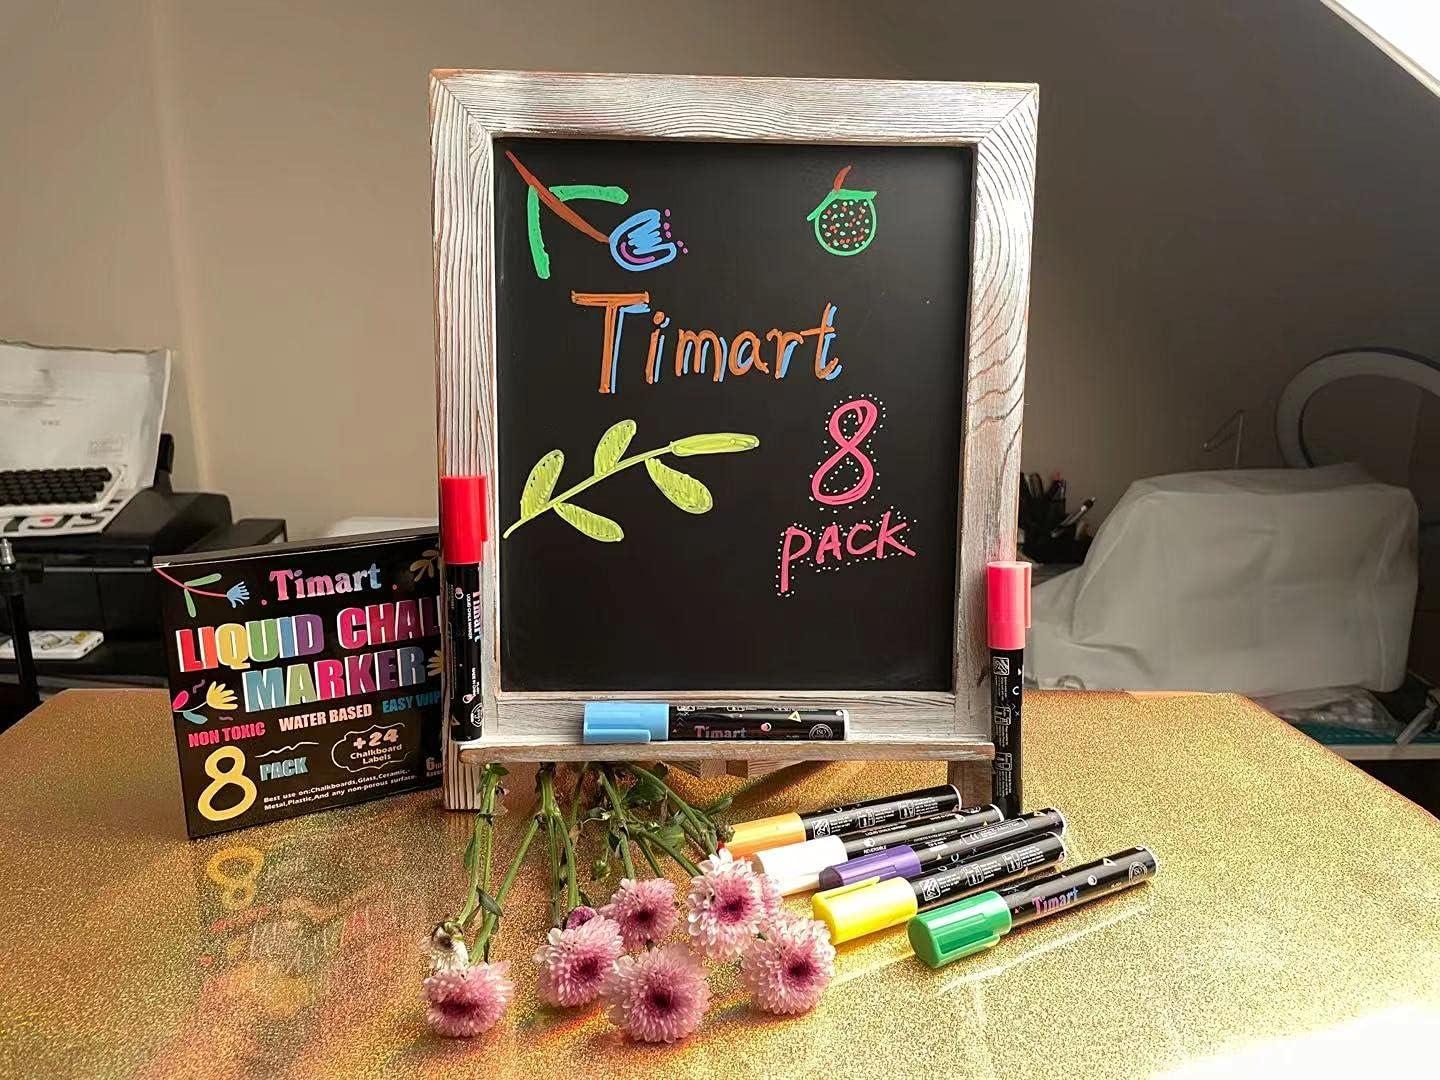  Liquid Chalk Markers - Set of 8 6 mm Fine Tip Chalk Pen + free  24x Chalkboard Stickers - Whiteboard Markers, chalkboard markers, Dry Erase  Markers, Glass Markers, Window Markers for